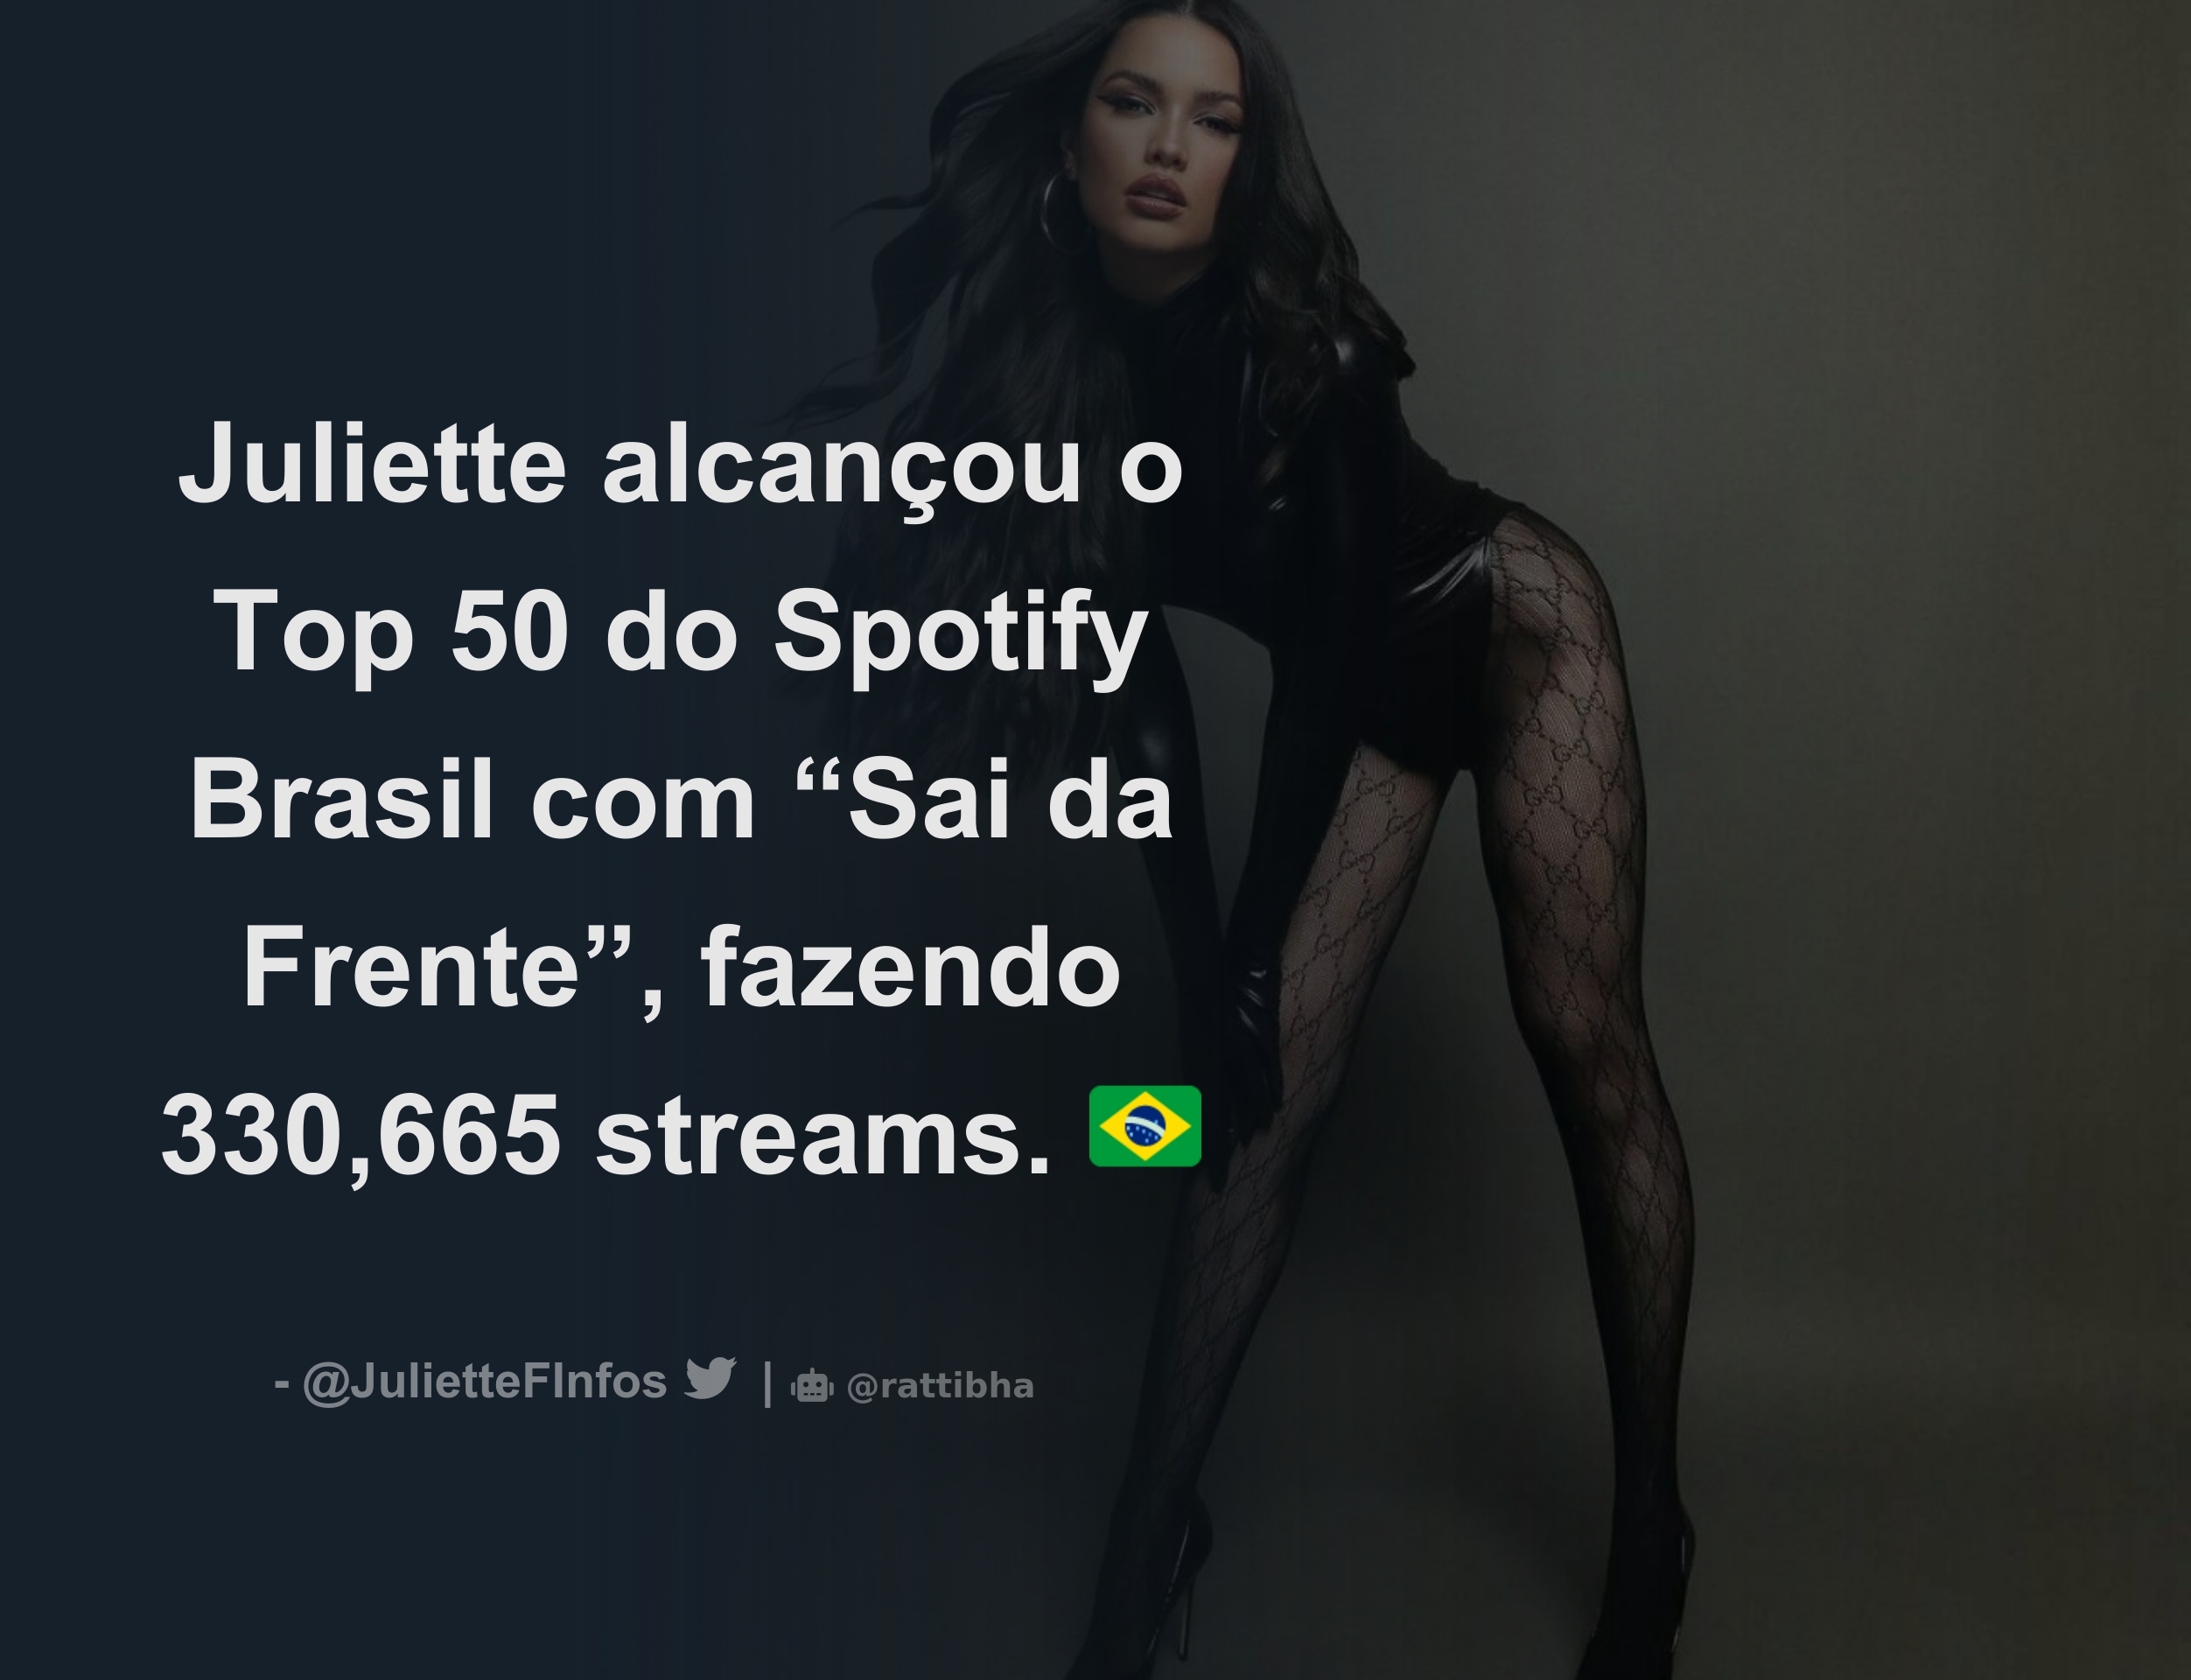 Juliette alcançou o Top 50 do Spotify Brasil com “Sai da Frente